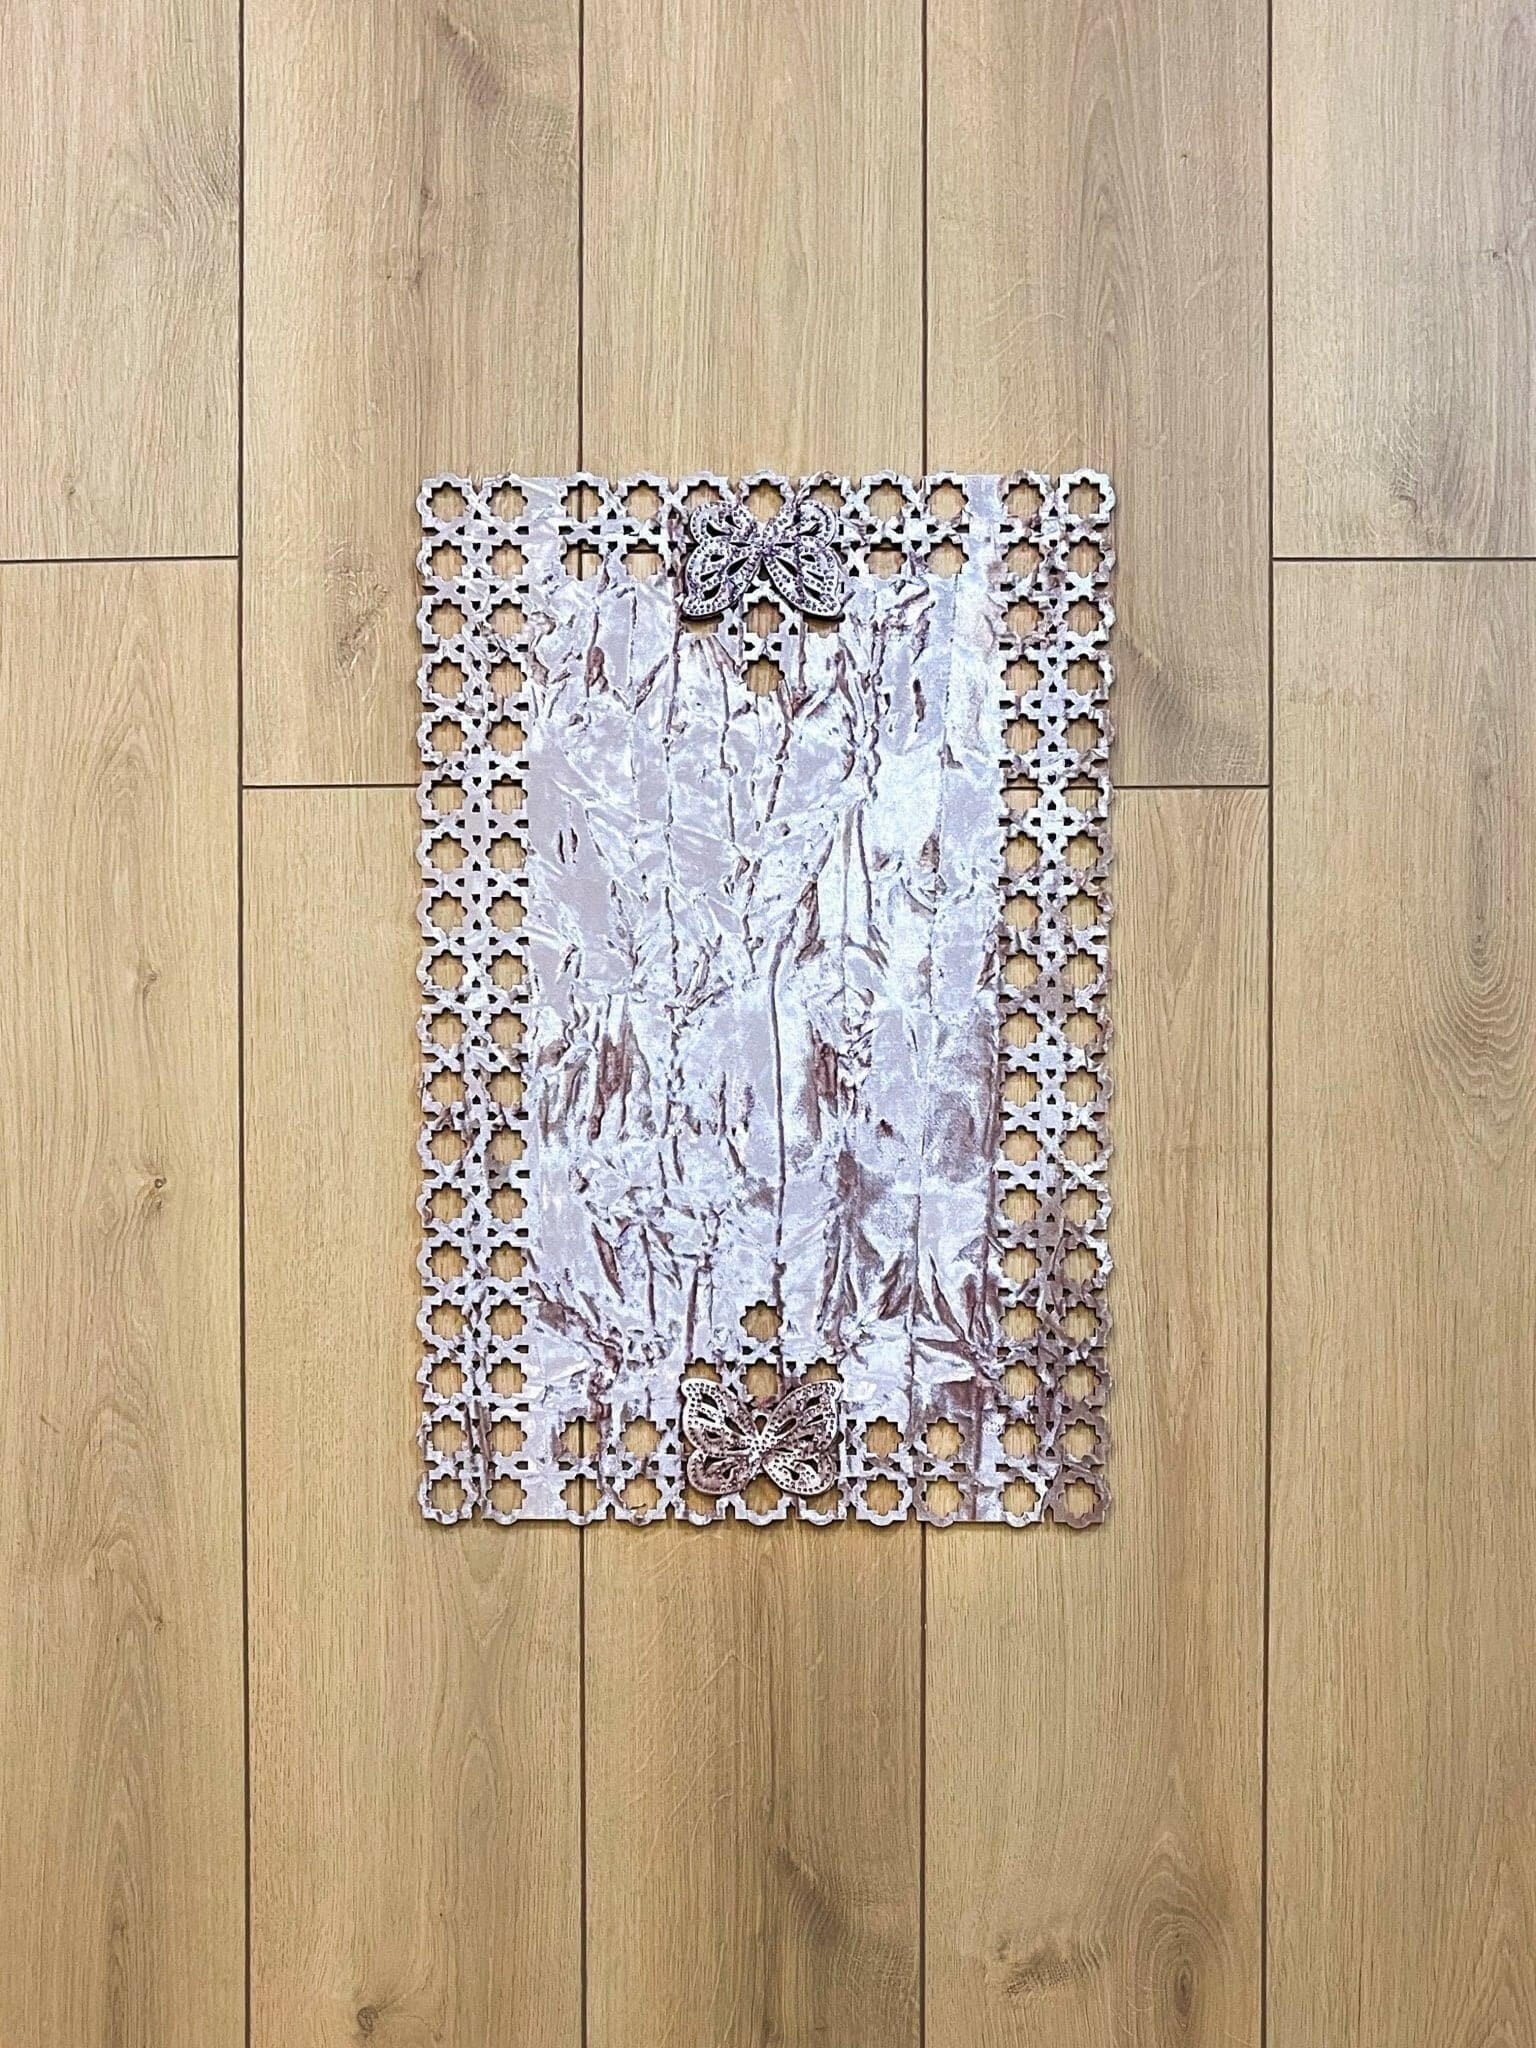 Kelebek Rose Pink Rug 40 x 60 cm - Creative Home Designs, Butterfly Turkish Carpet, Non Slip Washable Velvet Mat